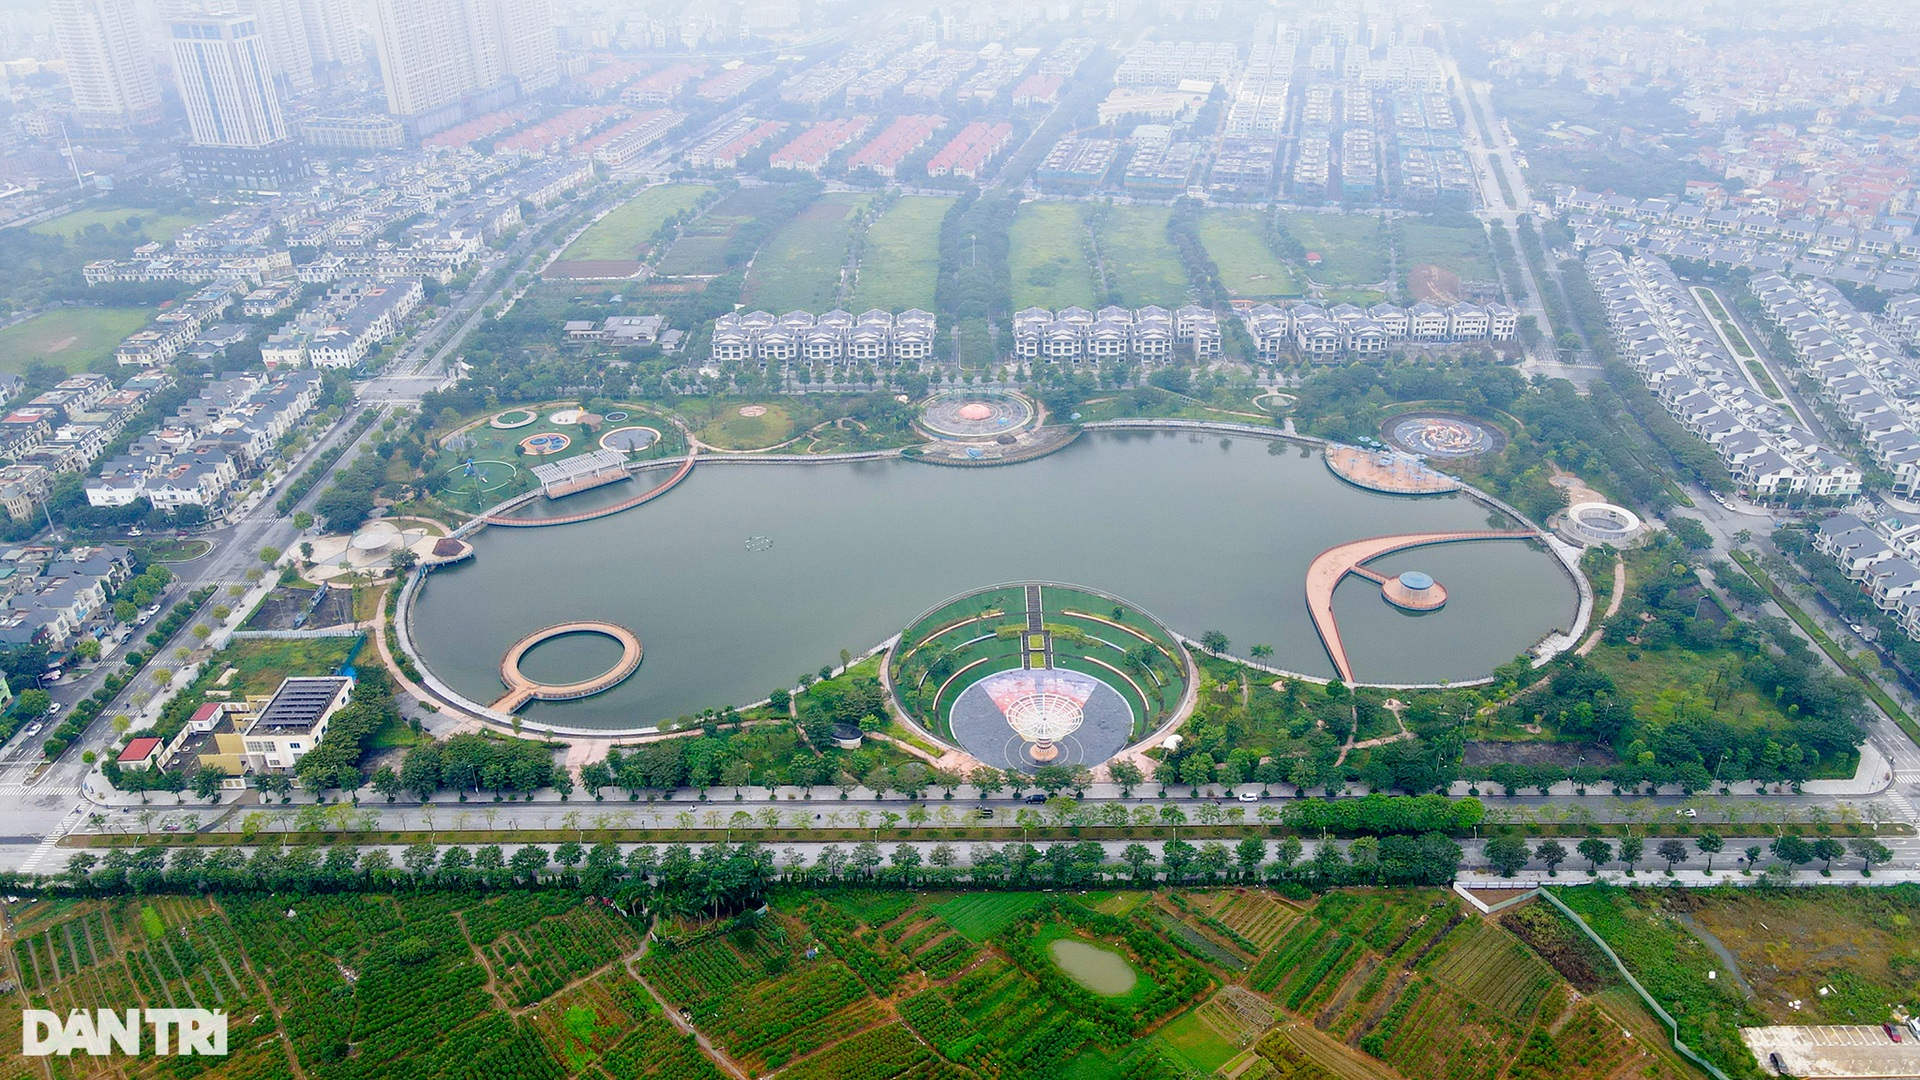 Công viên Thiên văn học hơn 260 tỷ đồng xây dựng sai quy hoạch tại Hà Nội - 1